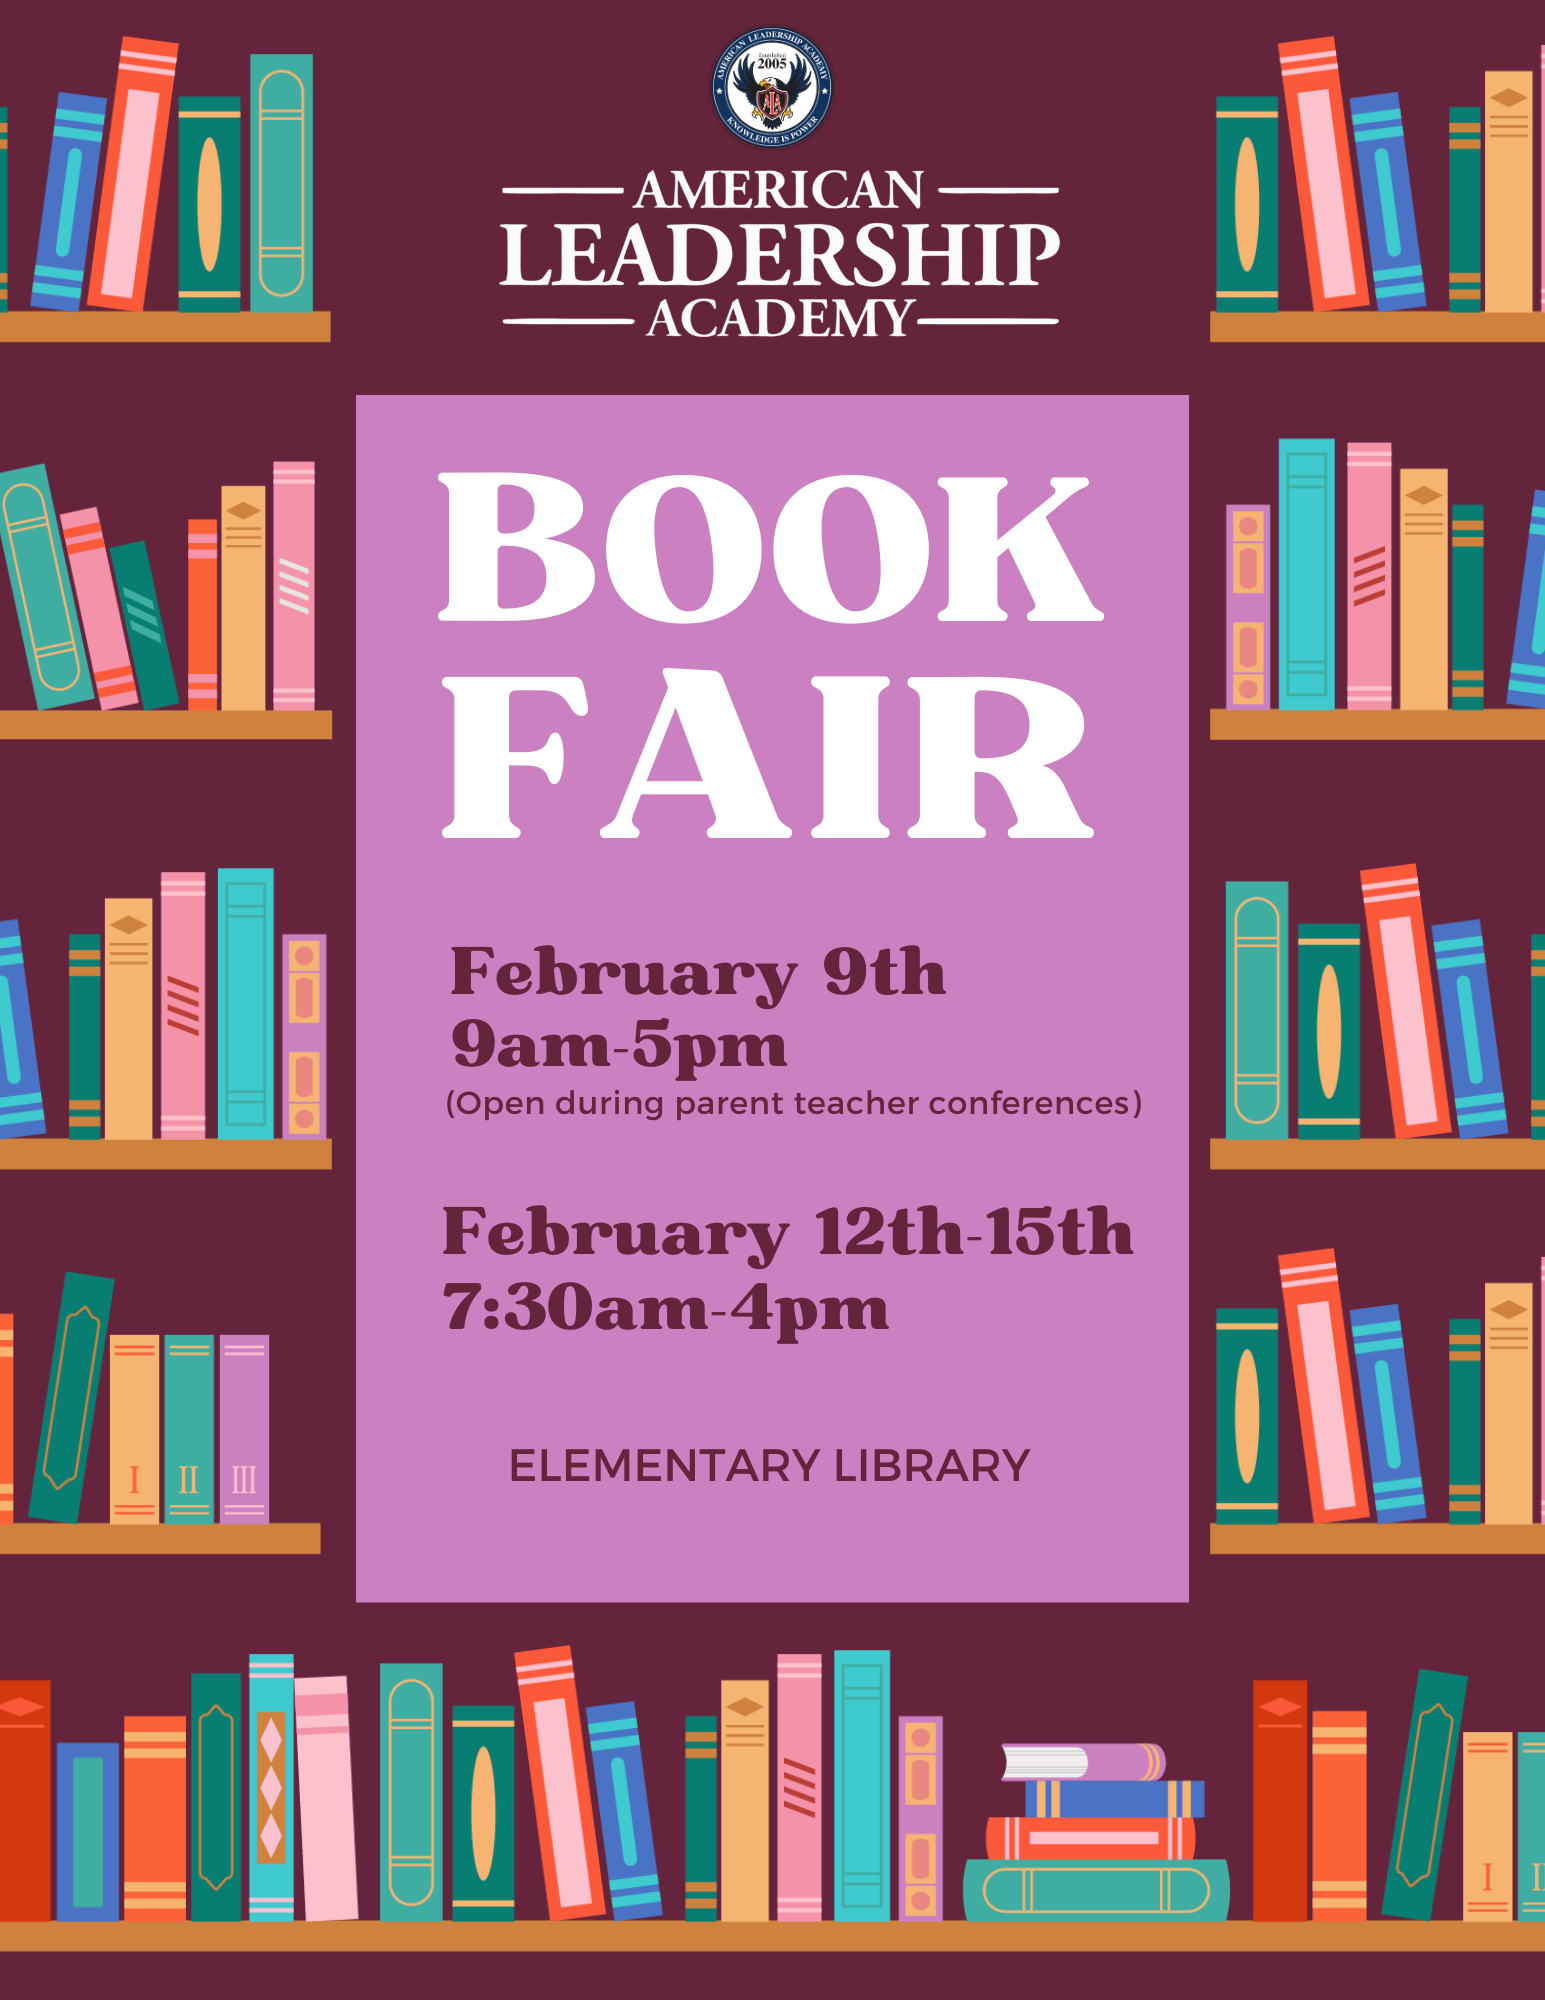 Eagle's Book Fair! February 9th 9am-5pm